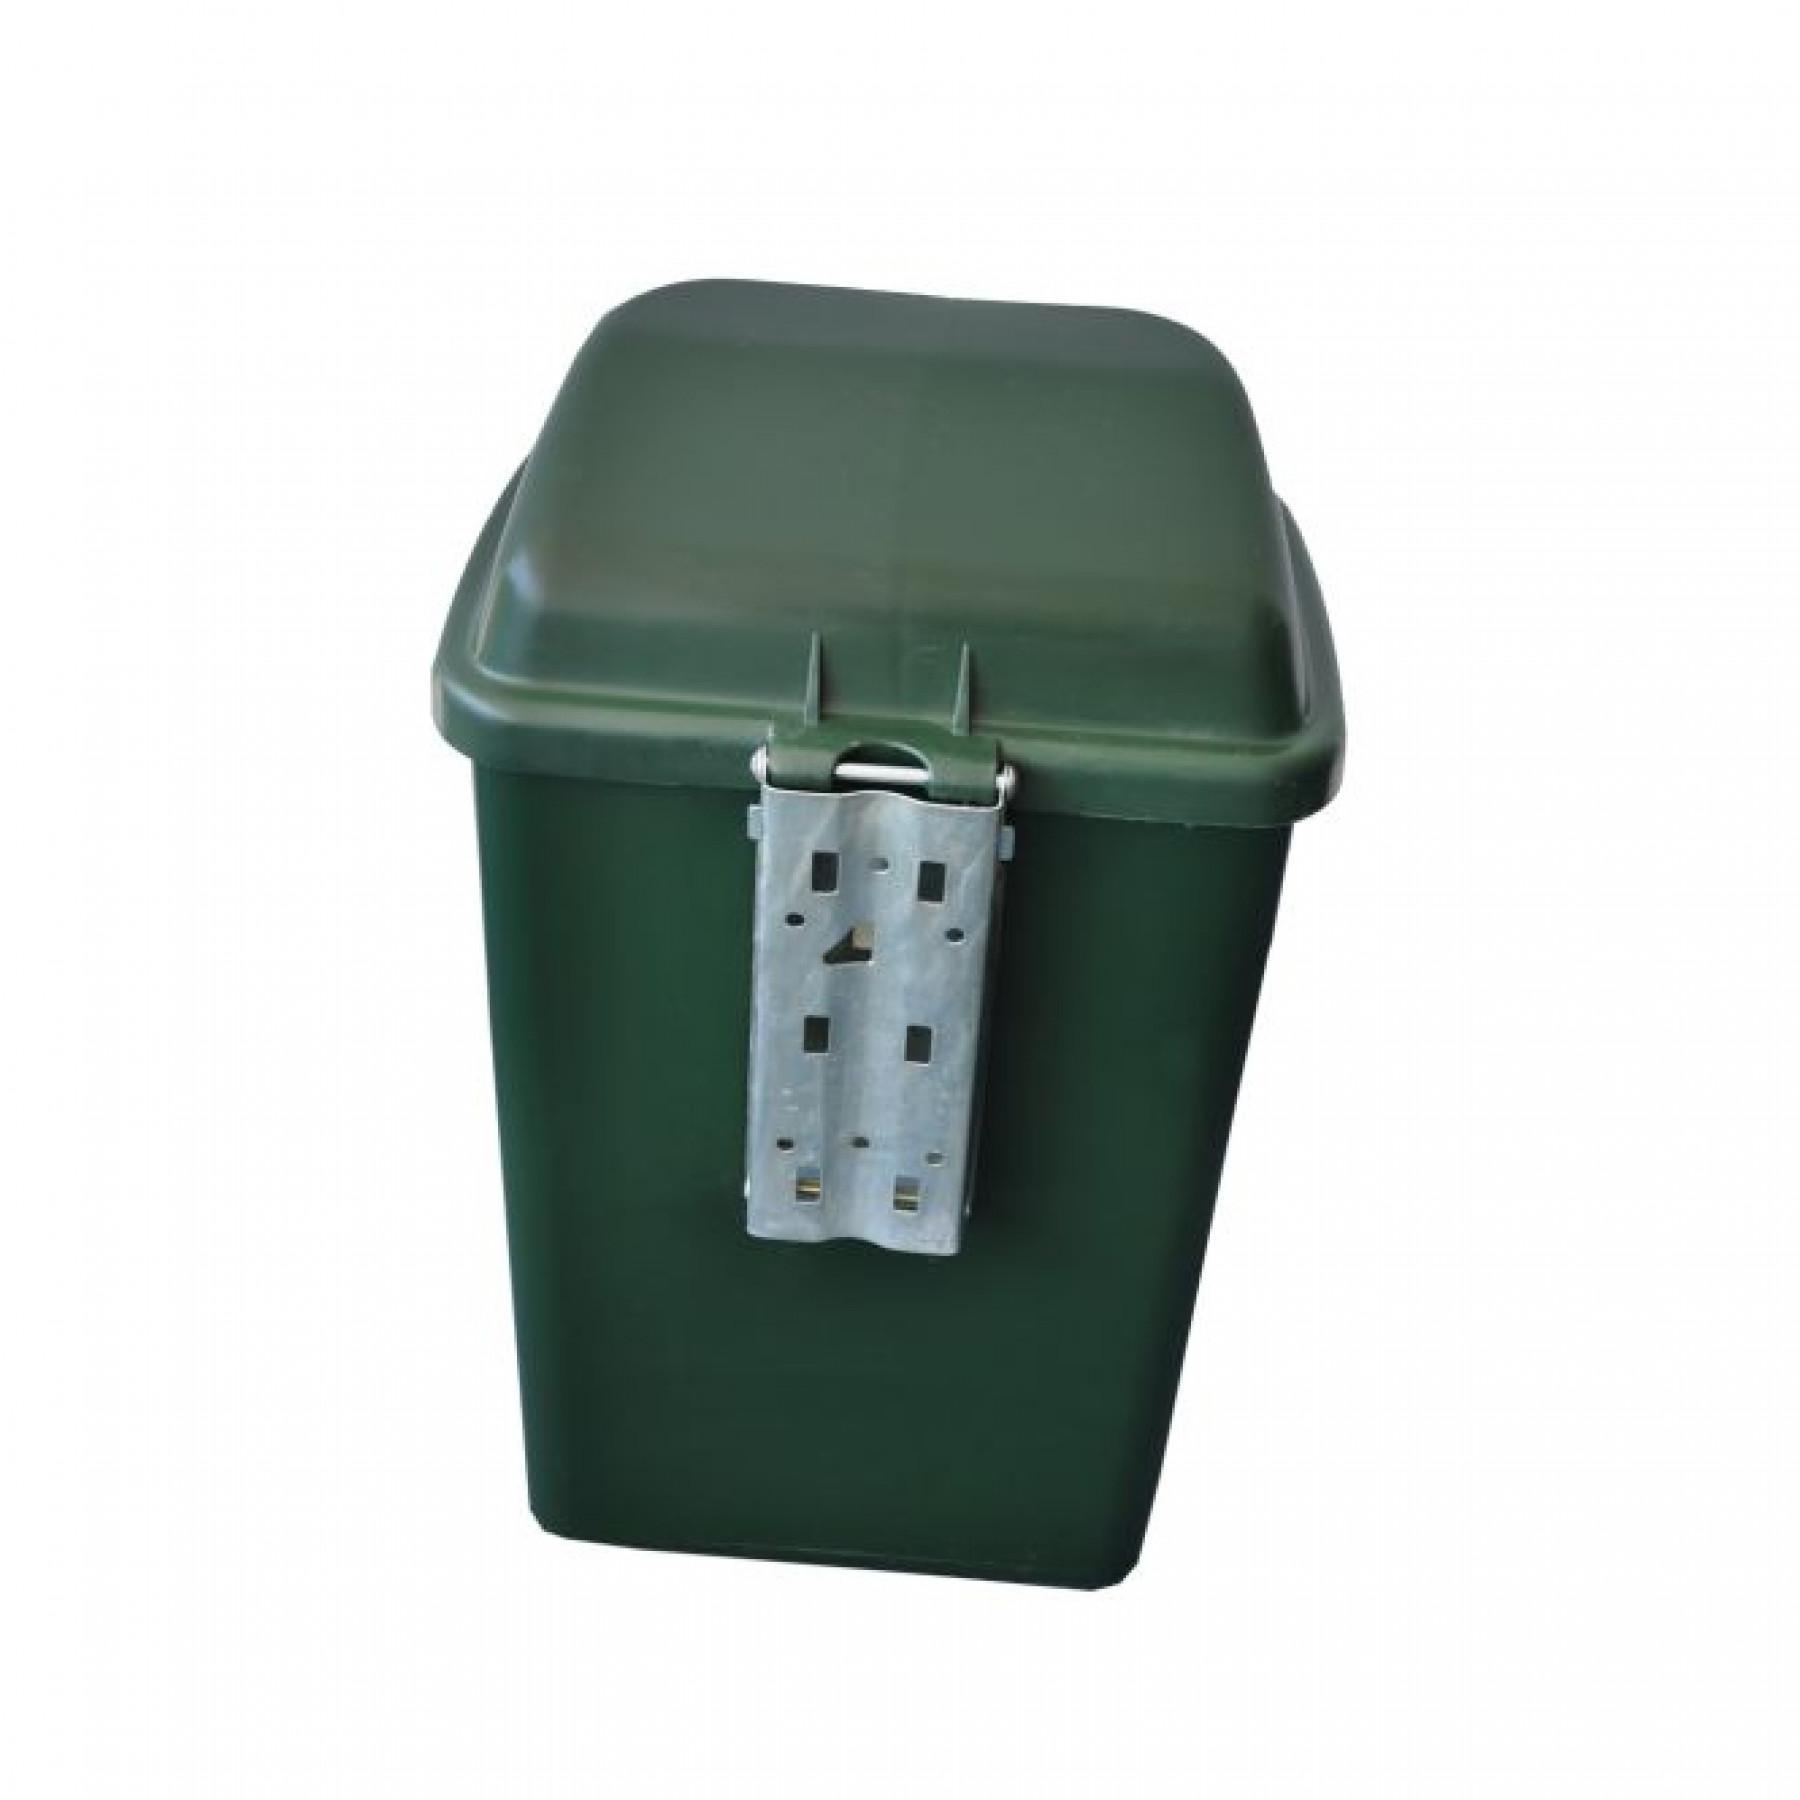 Green garbage can - Carrington Carrington